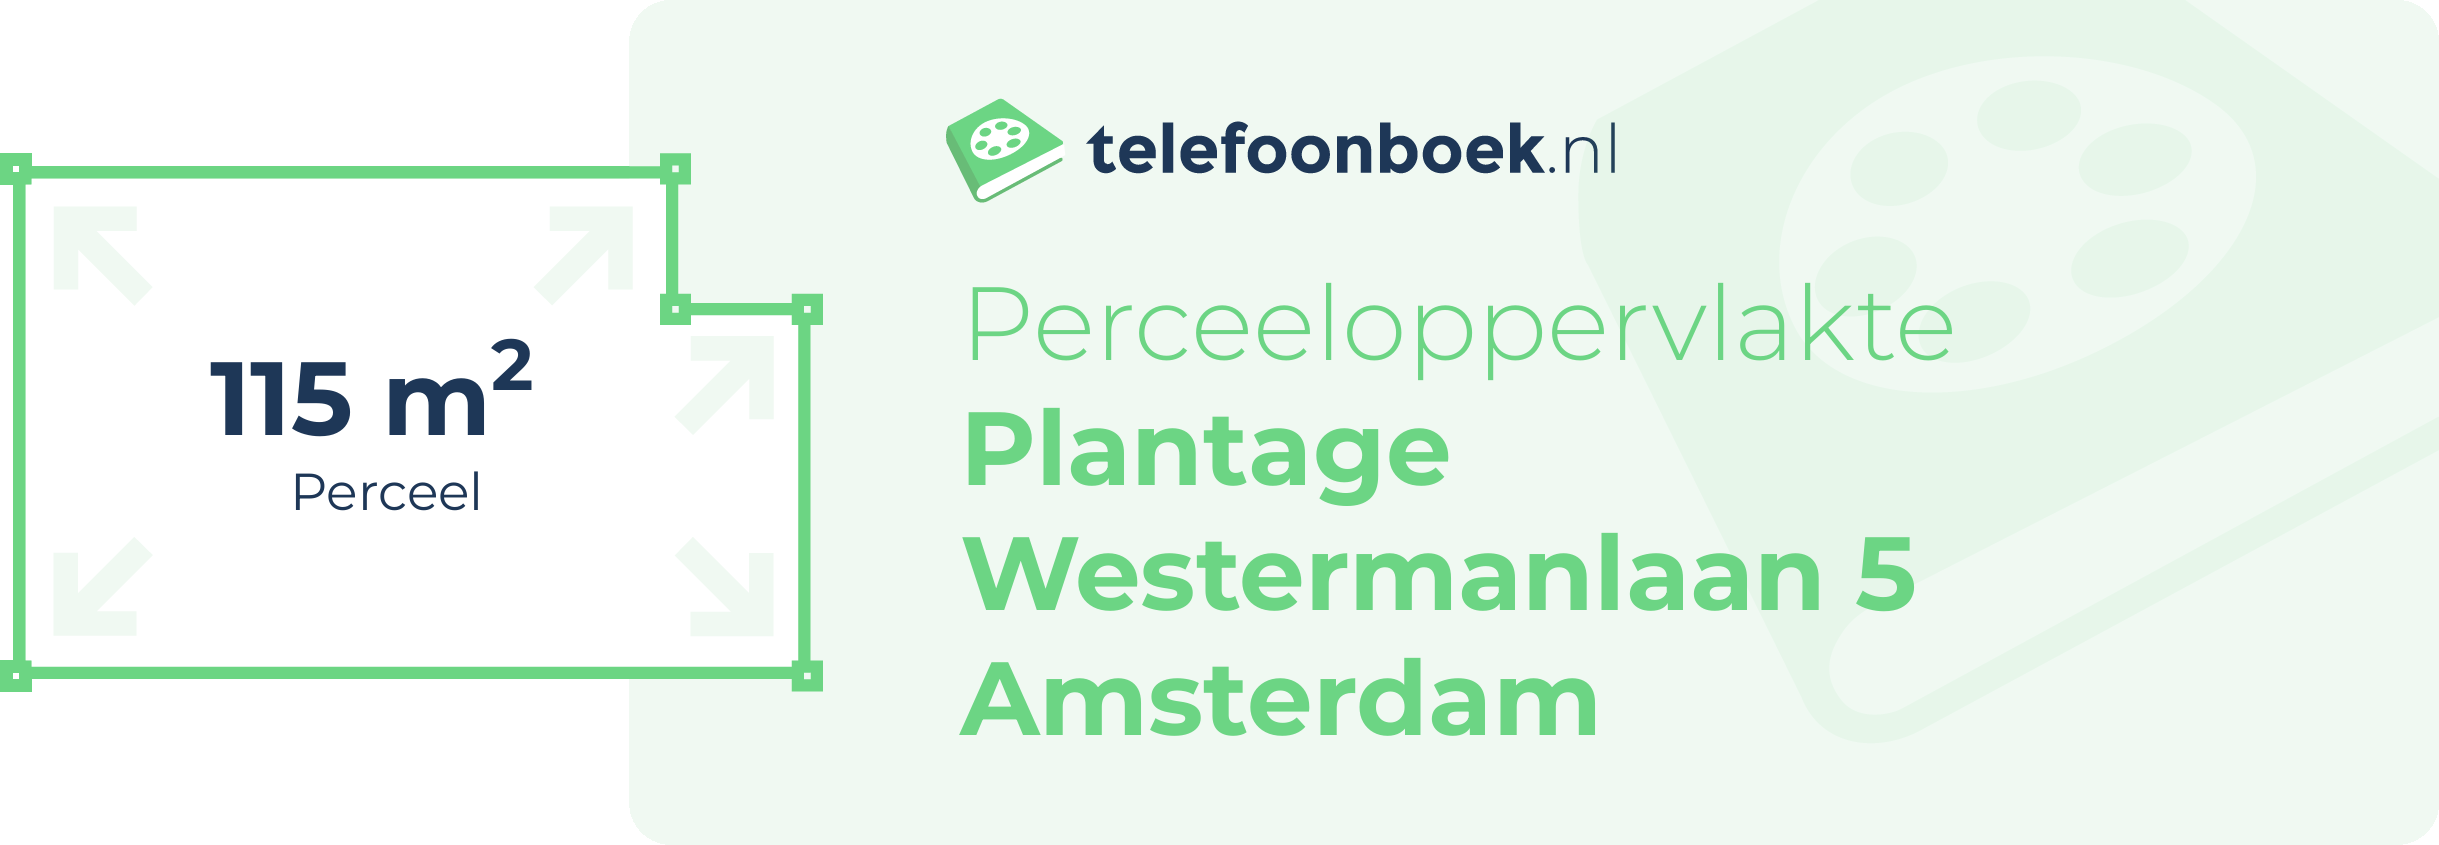 Perceeloppervlakte Plantage Westermanlaan 5 Amsterdam